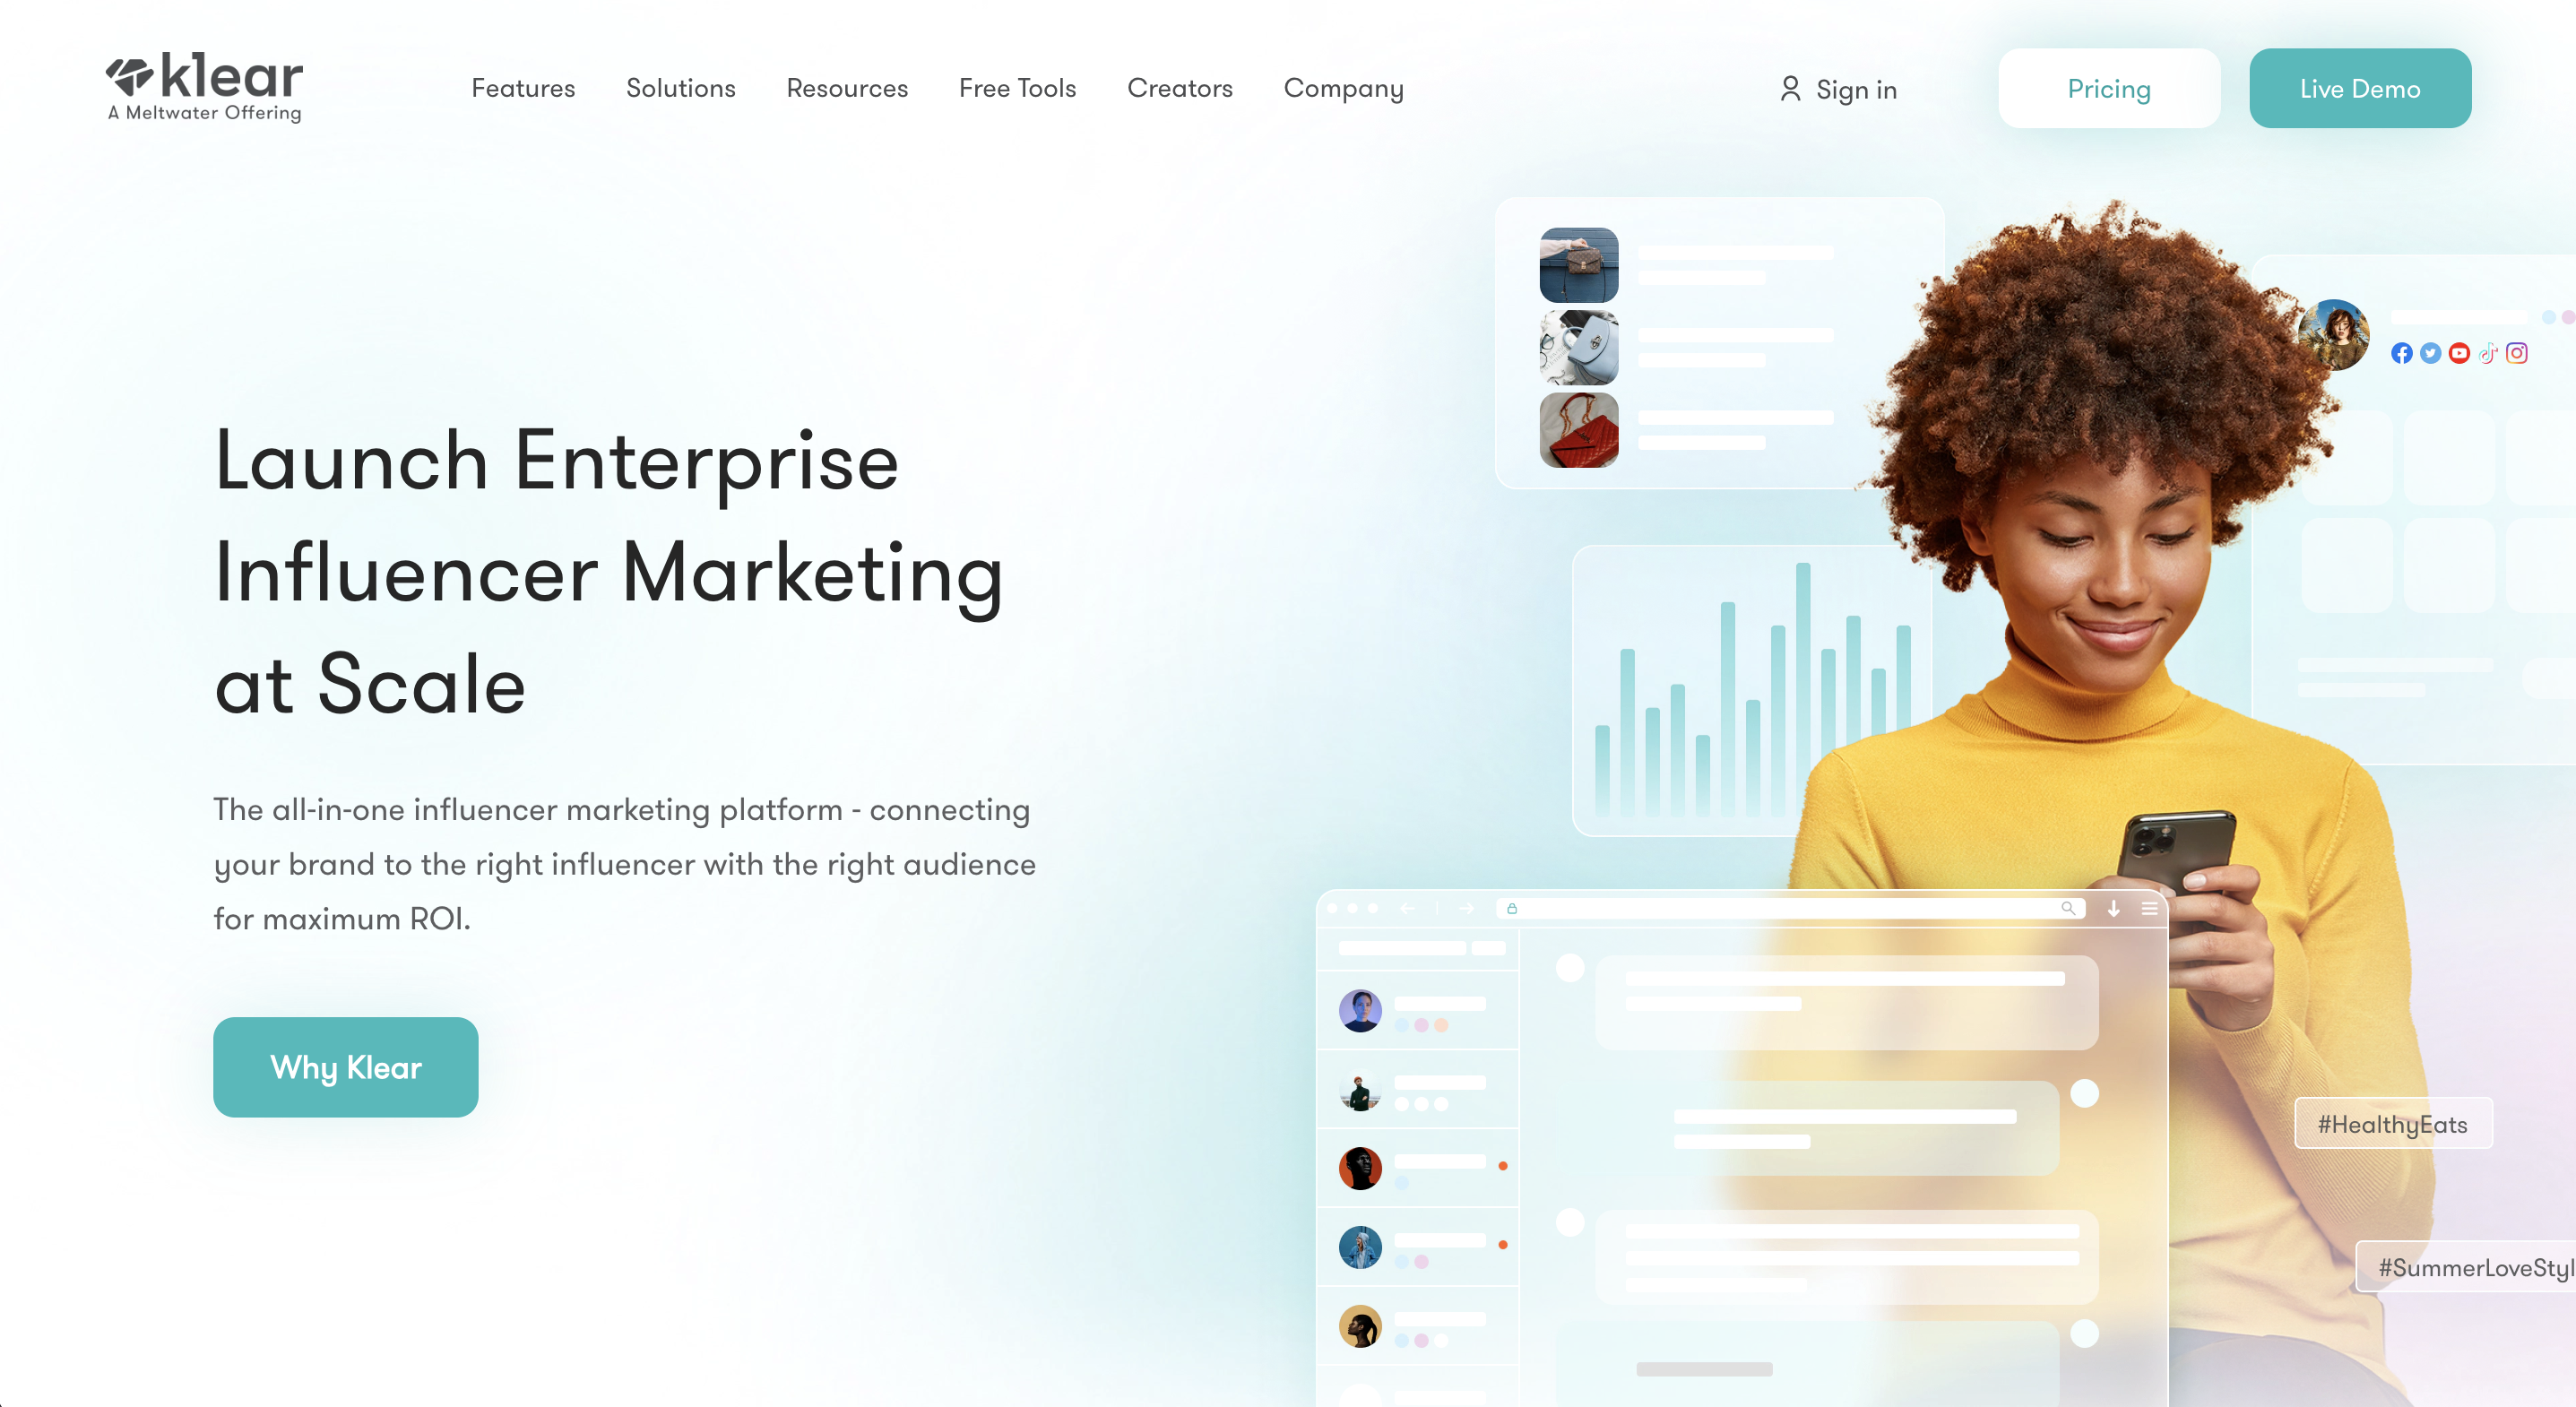 A screenshot of influencer marketing platform Klear's website